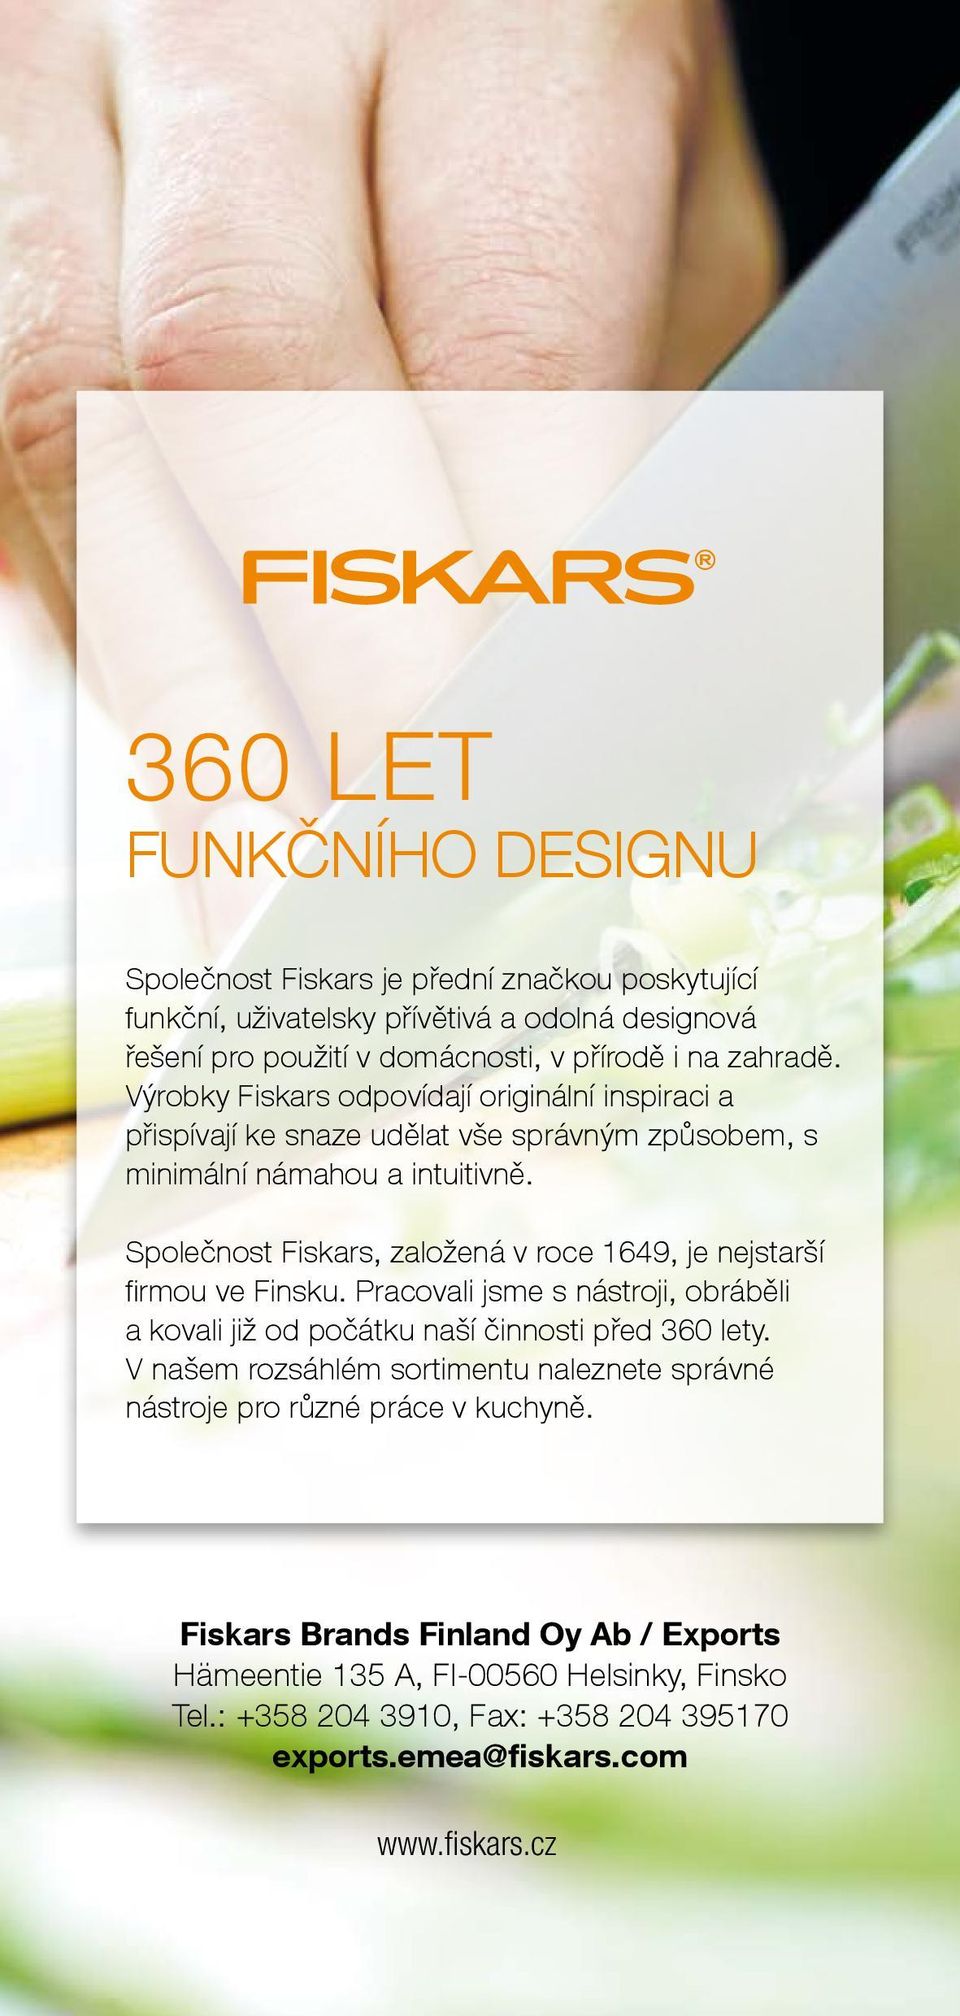 Společnost Fiskars, založená v roce 1649, je nejstarší firmou ve Finsku. Pracovali jsme s nástroji, obráběli a kovali již od počátku naší činnosti před 360 lety.